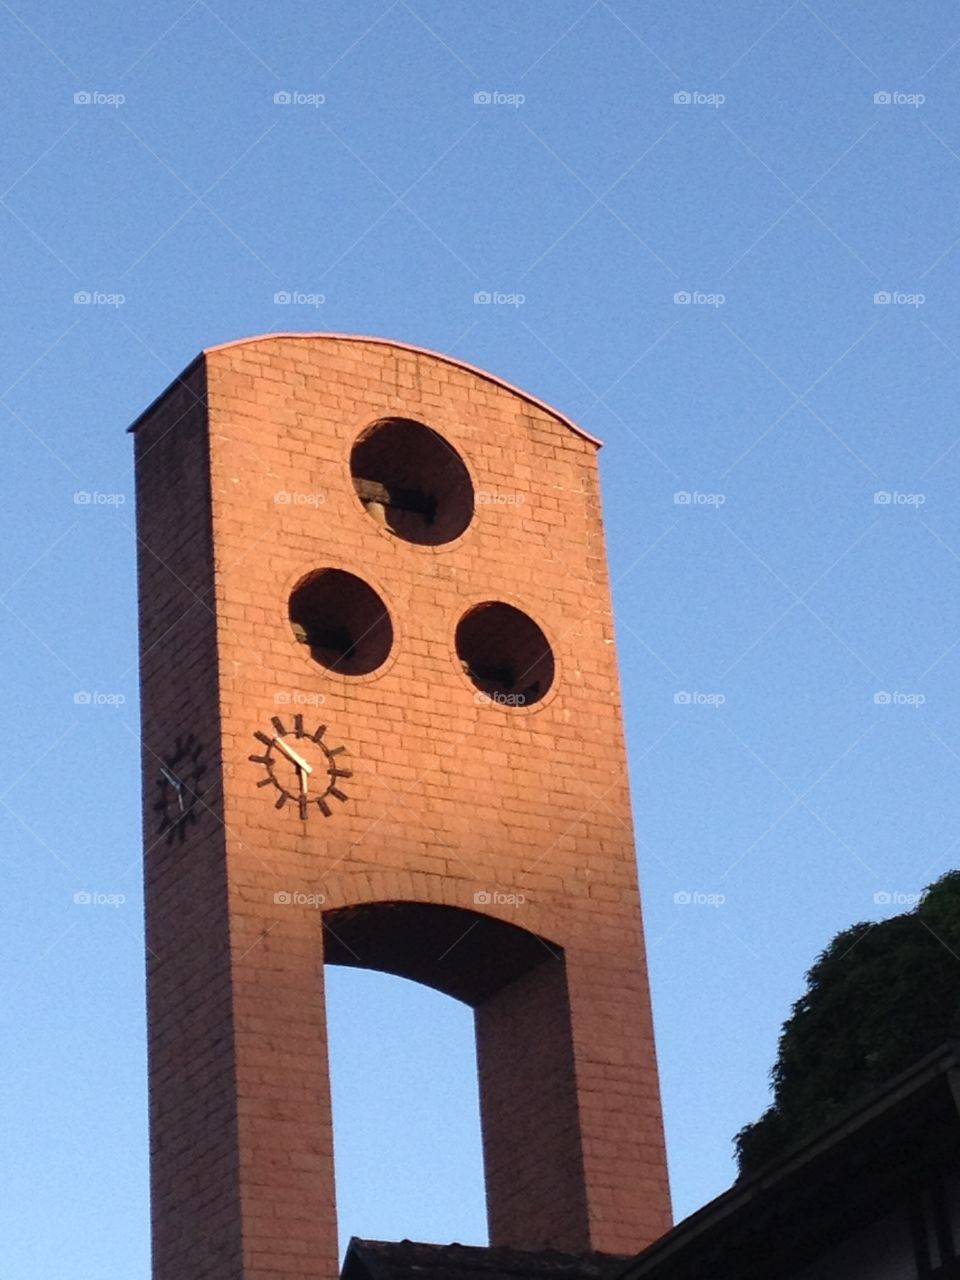 Clock tower church